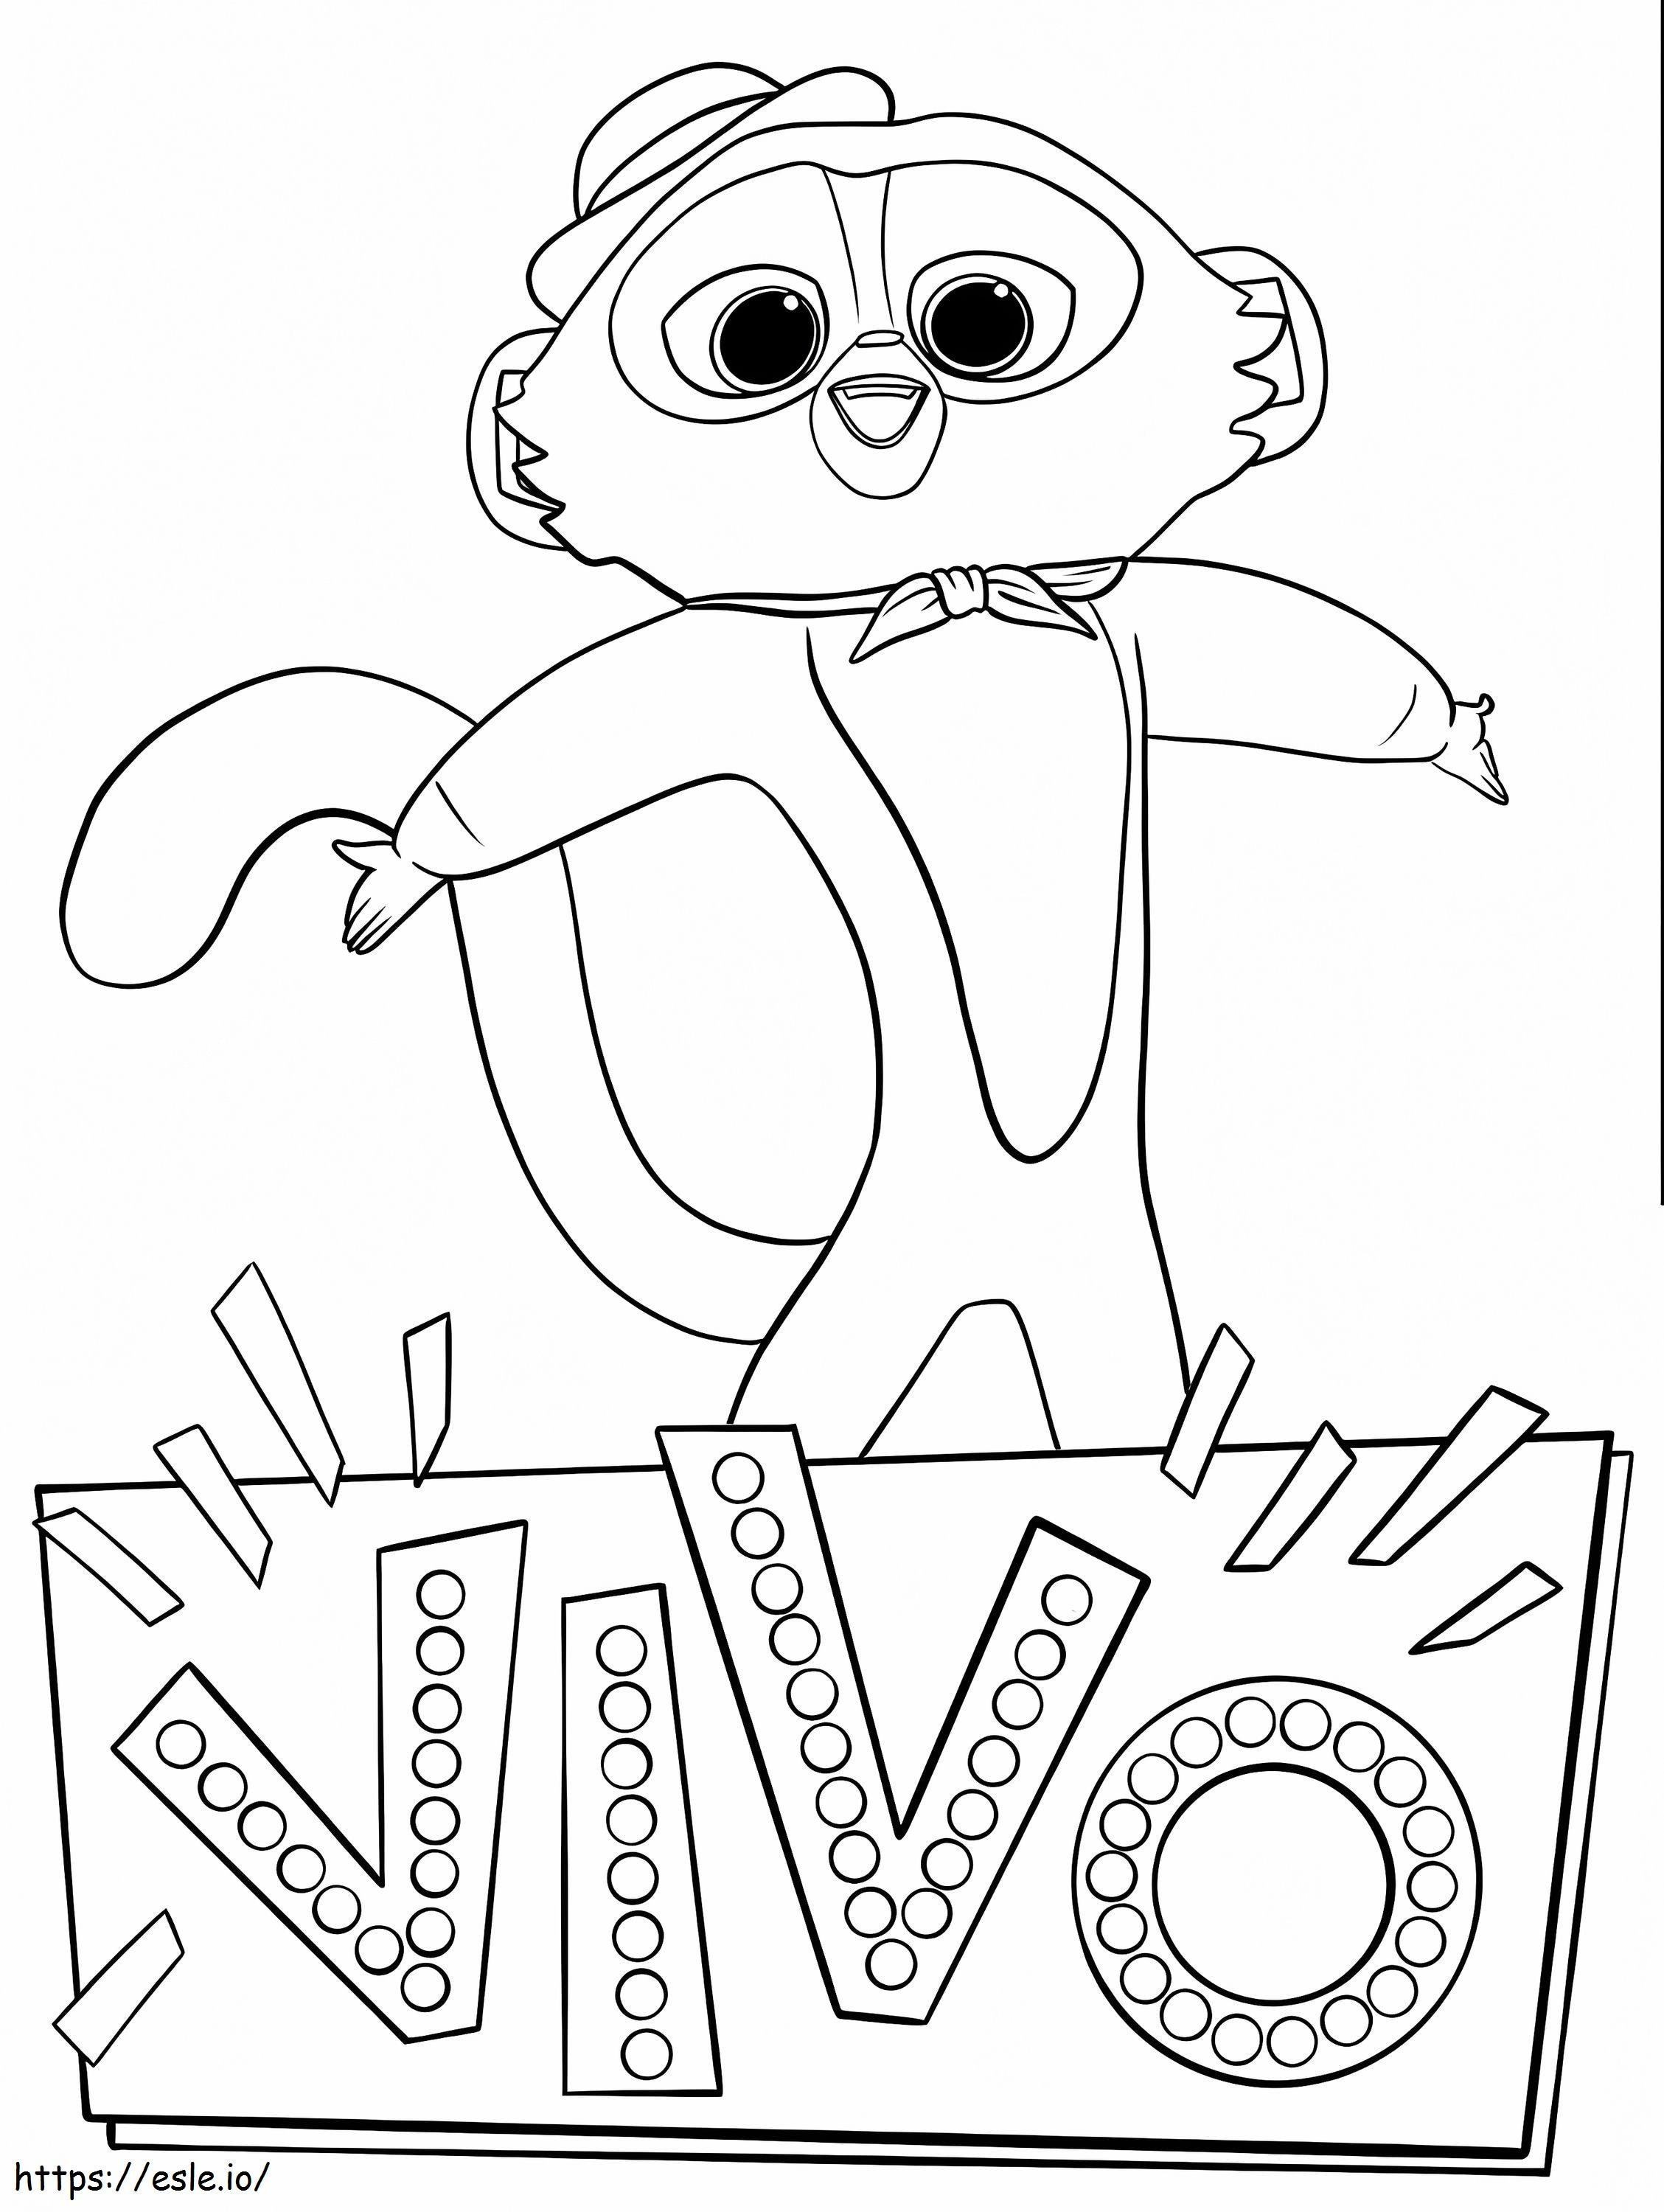 Vivo-Hauptfigur ausmalbilder